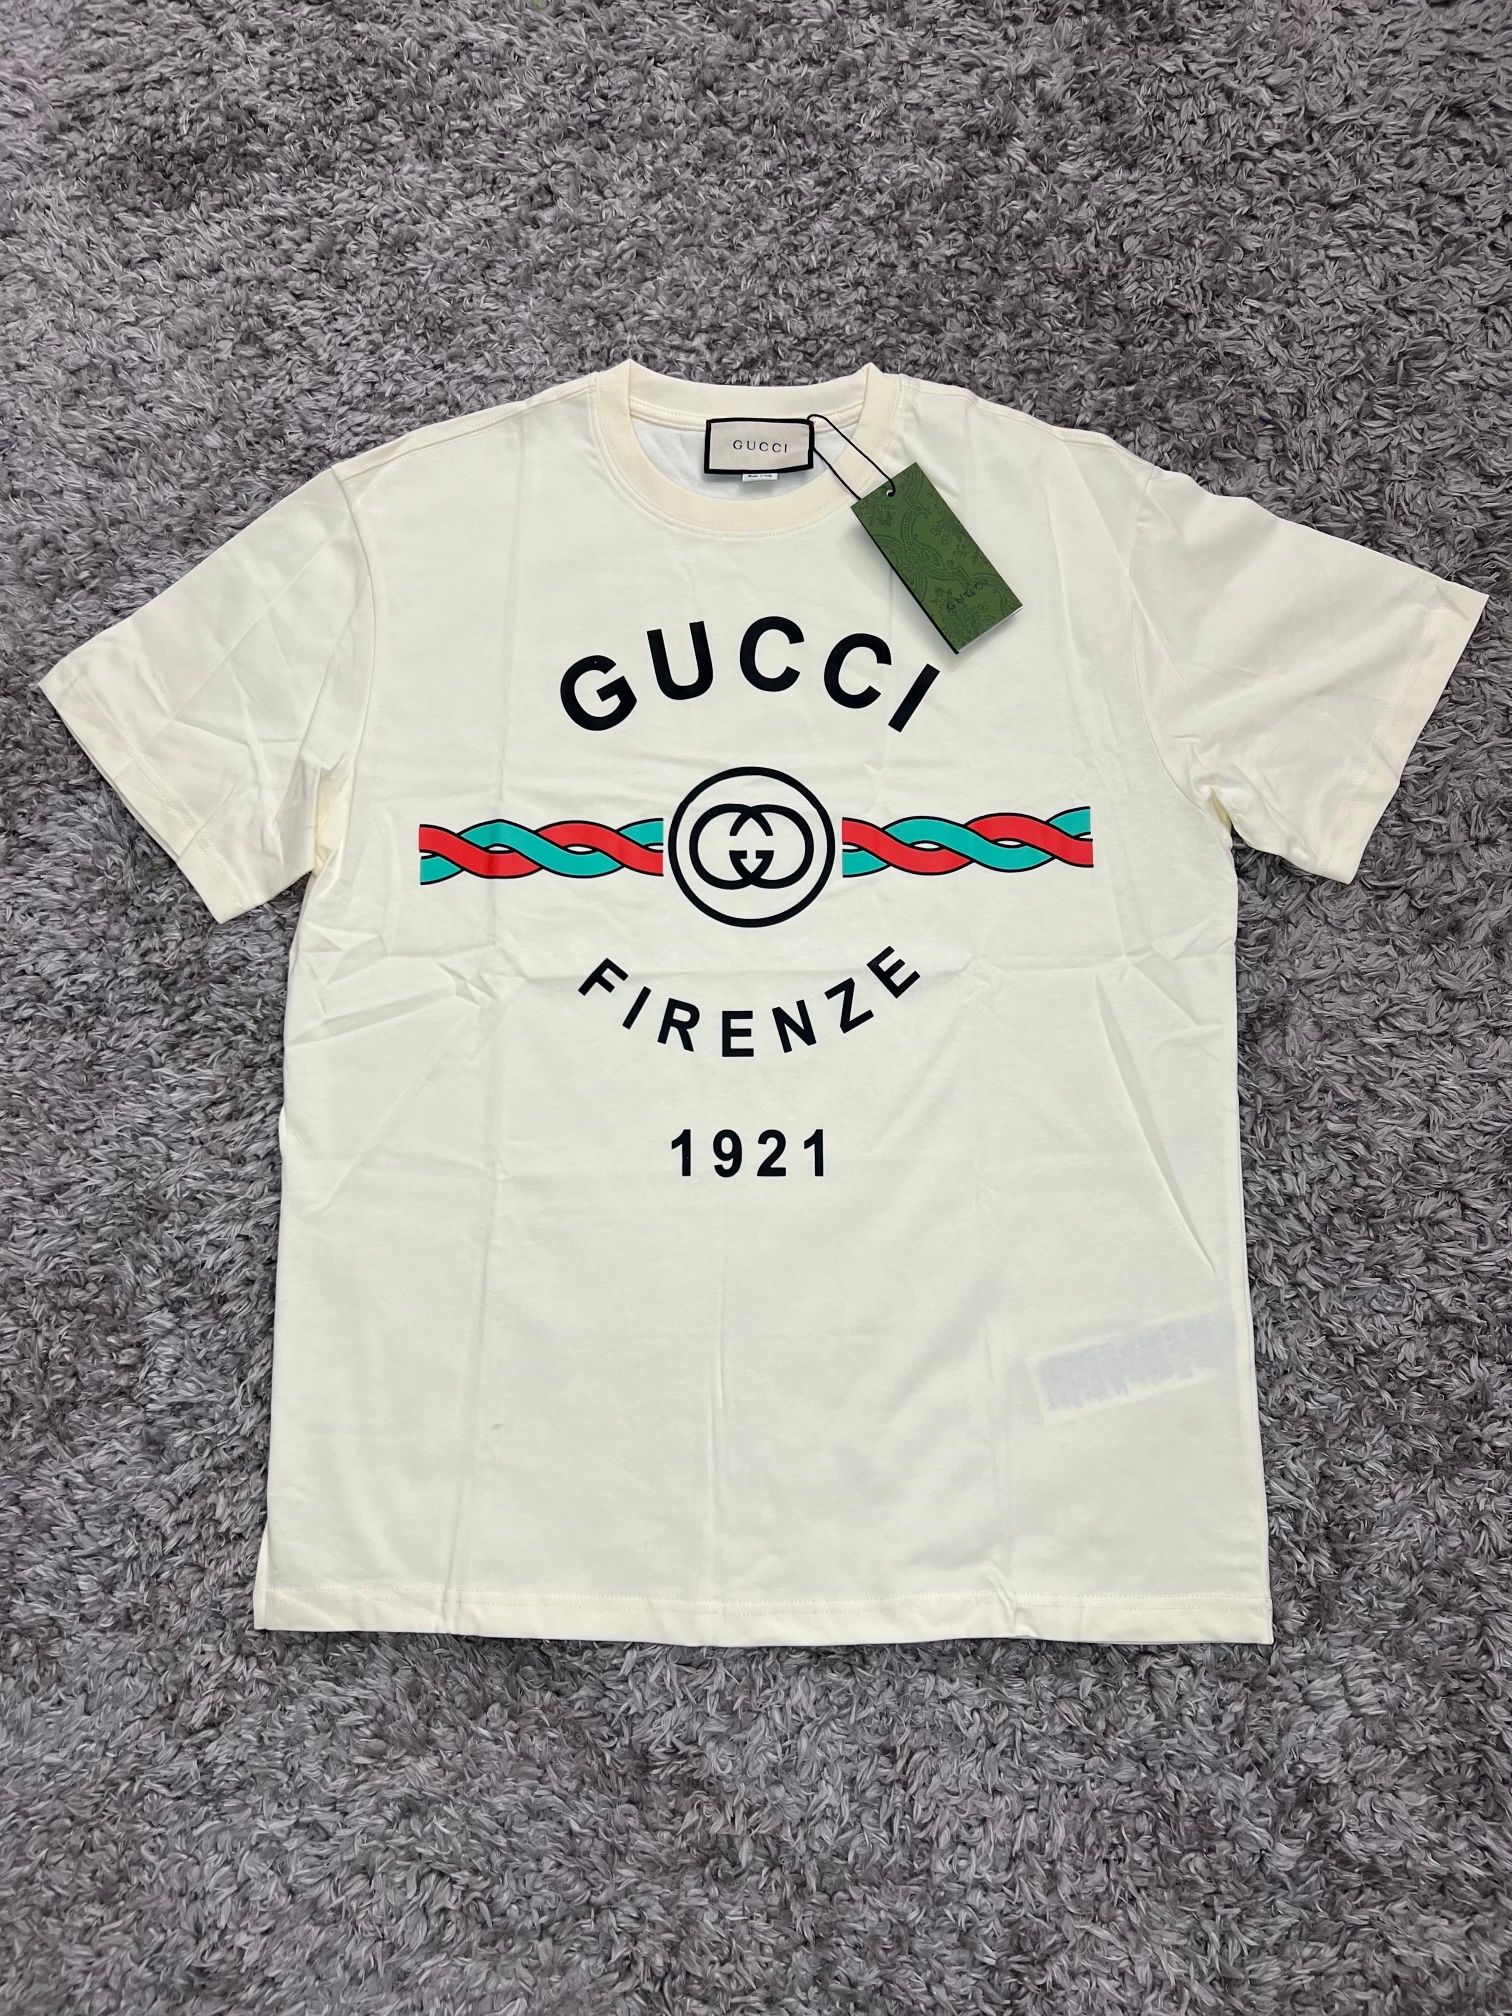 Gucci t shirt sizes S & L (READ THE DESCRIPTION!)